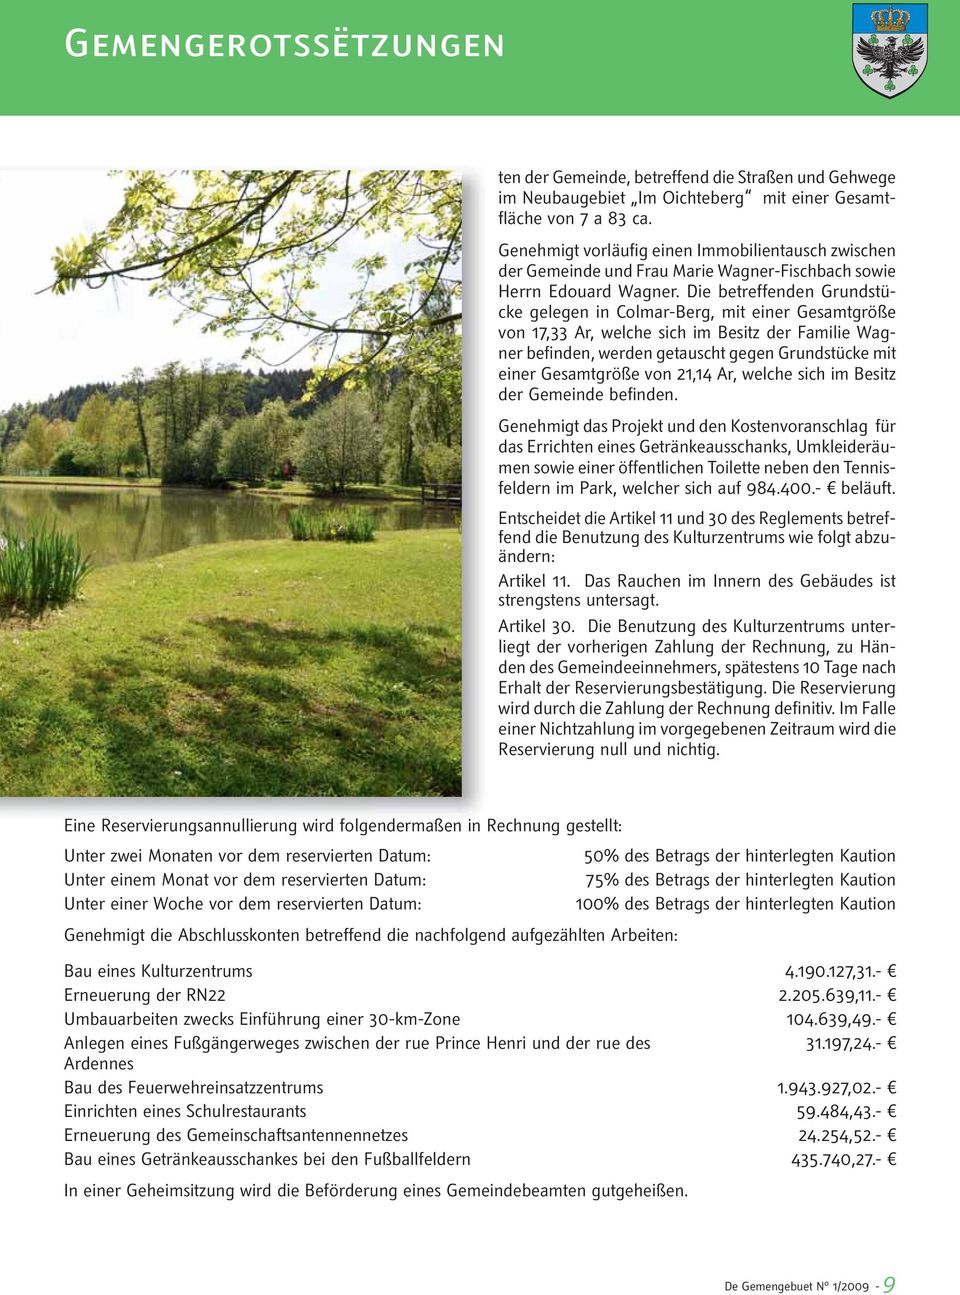 Die betreffenden Grundstücke gelegen in Colmar-Berg, mit einer Gesamtgröße von 17,33 Ar, welche sich im Besitz der Familie Wagner befinden, werden getauscht gegen Grundstücke mit einer Gesamtgröße